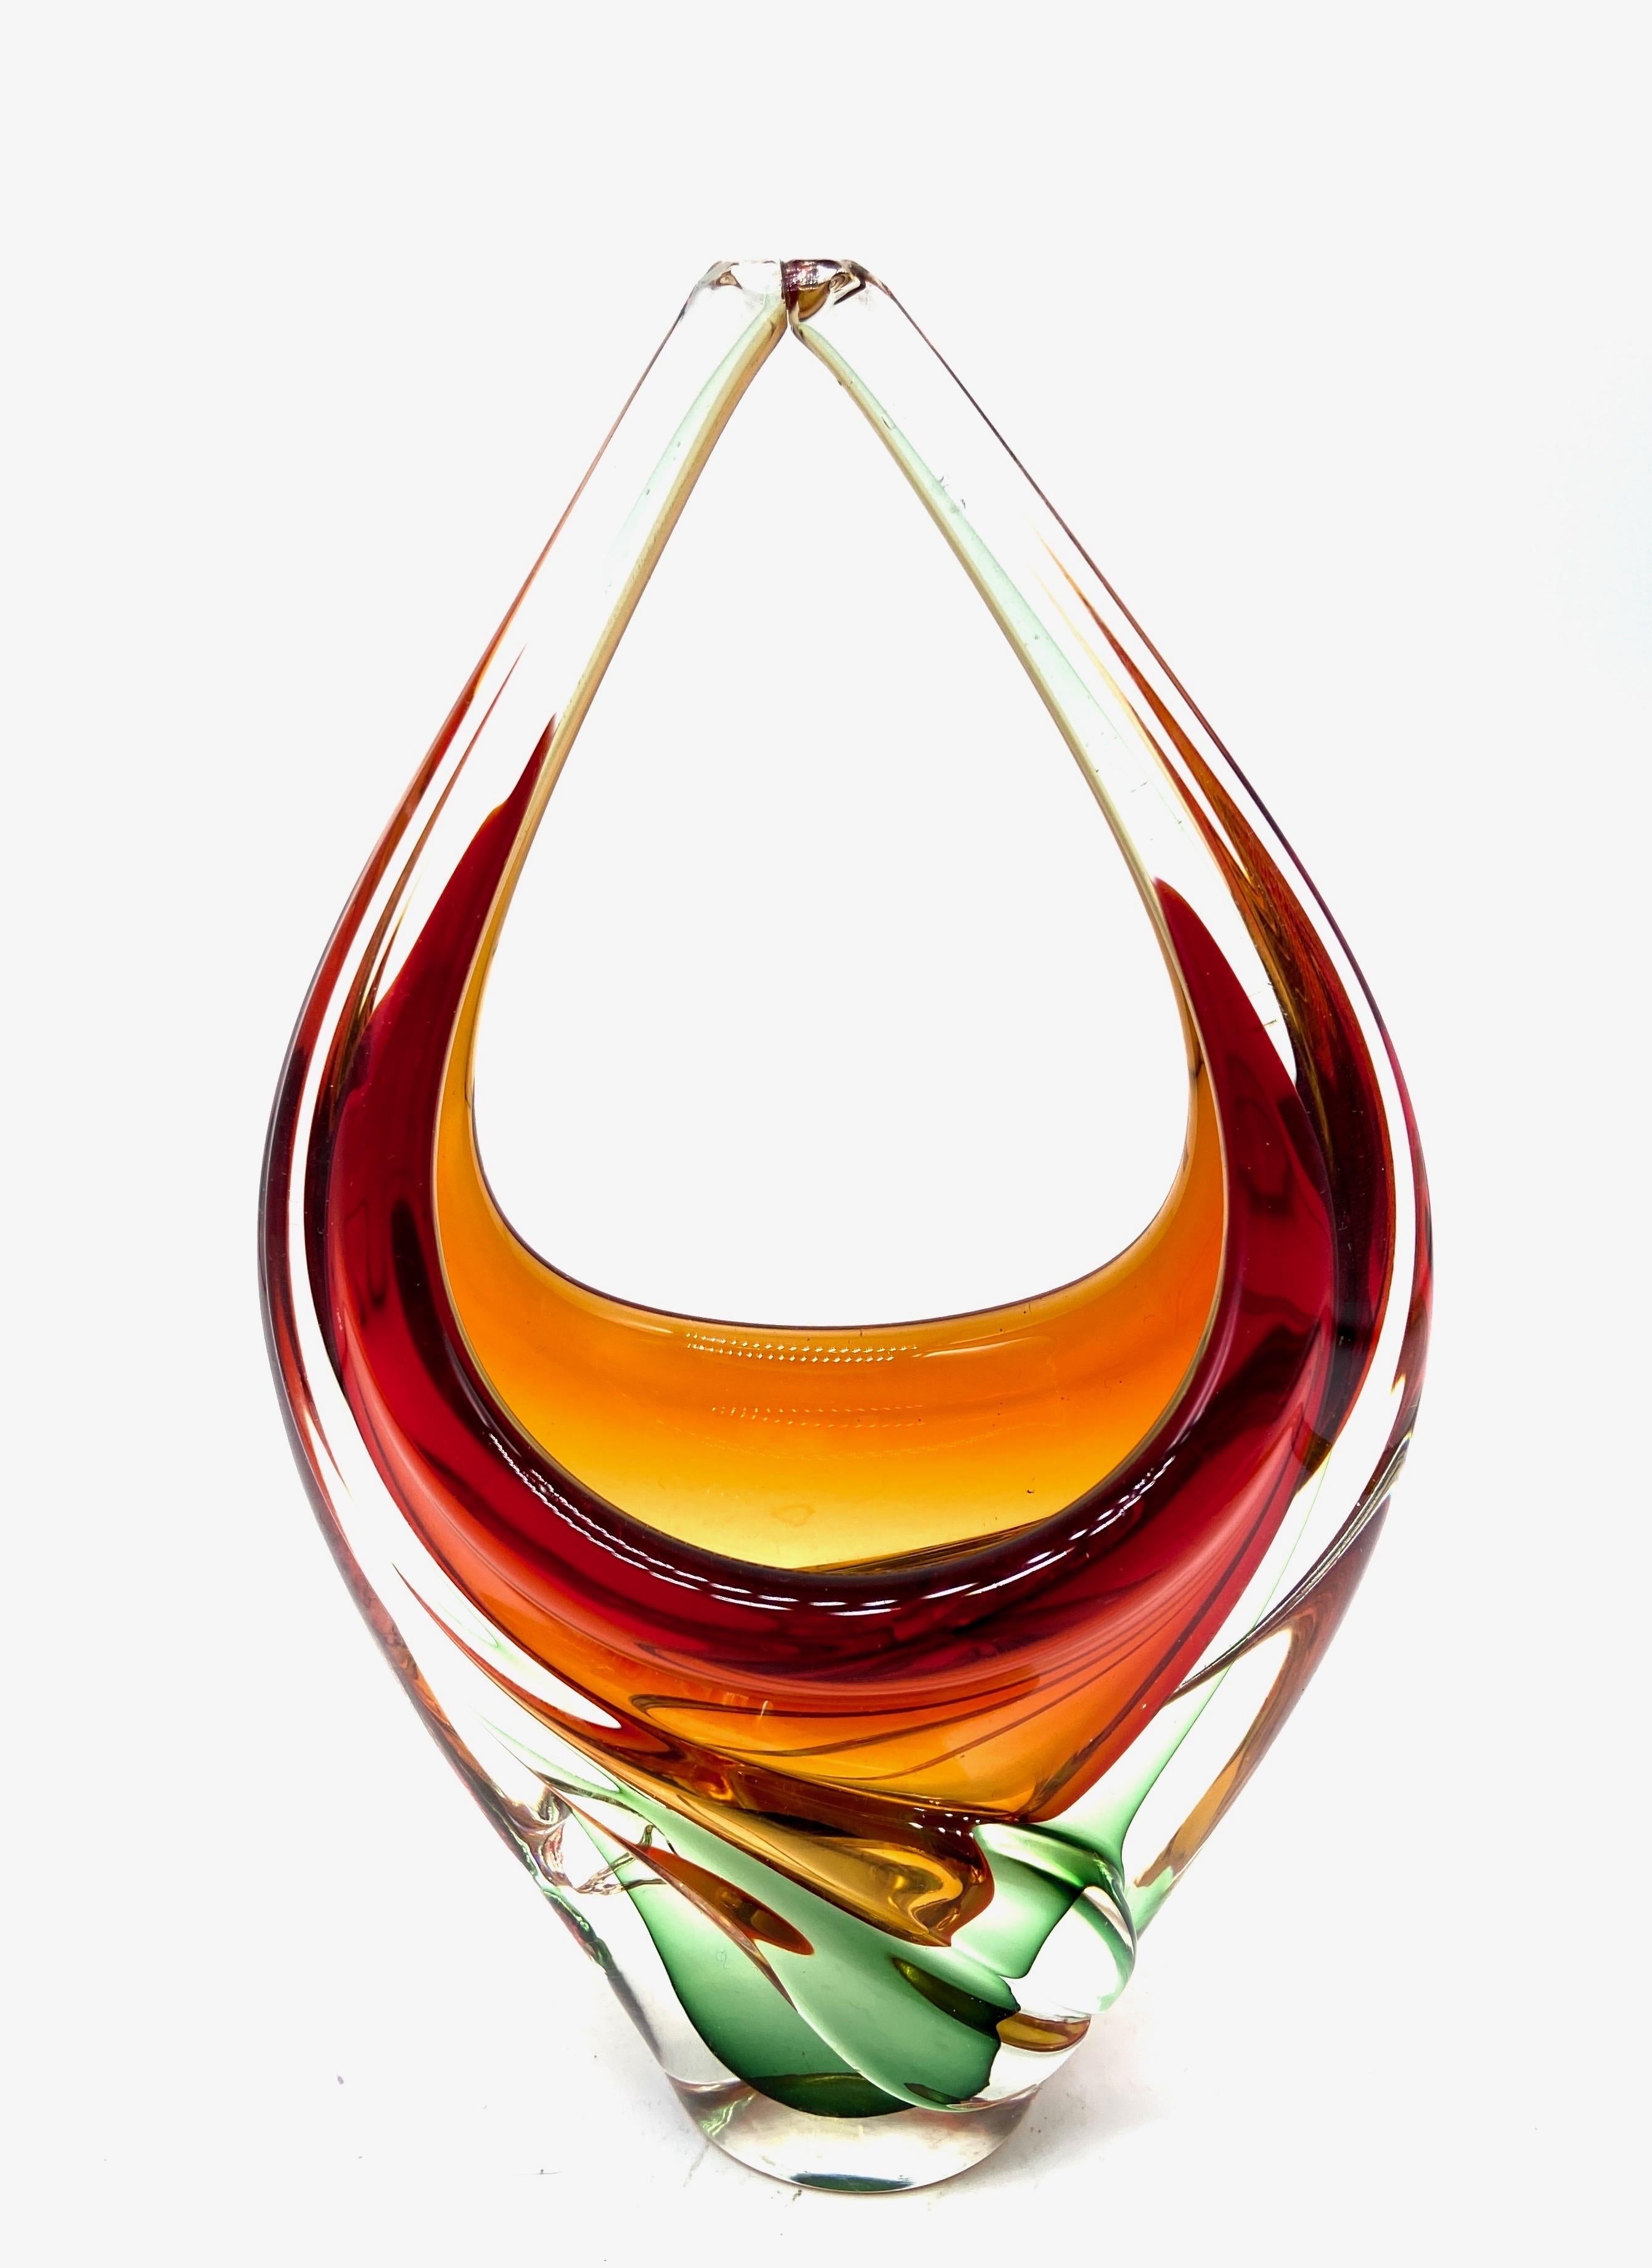 Murano-Vase aus mundgeblasenem Kunstglas. Italienisches Design, 1950er Jahre.
Maße: 22 Höhe cm.
In perfektem Zustand.